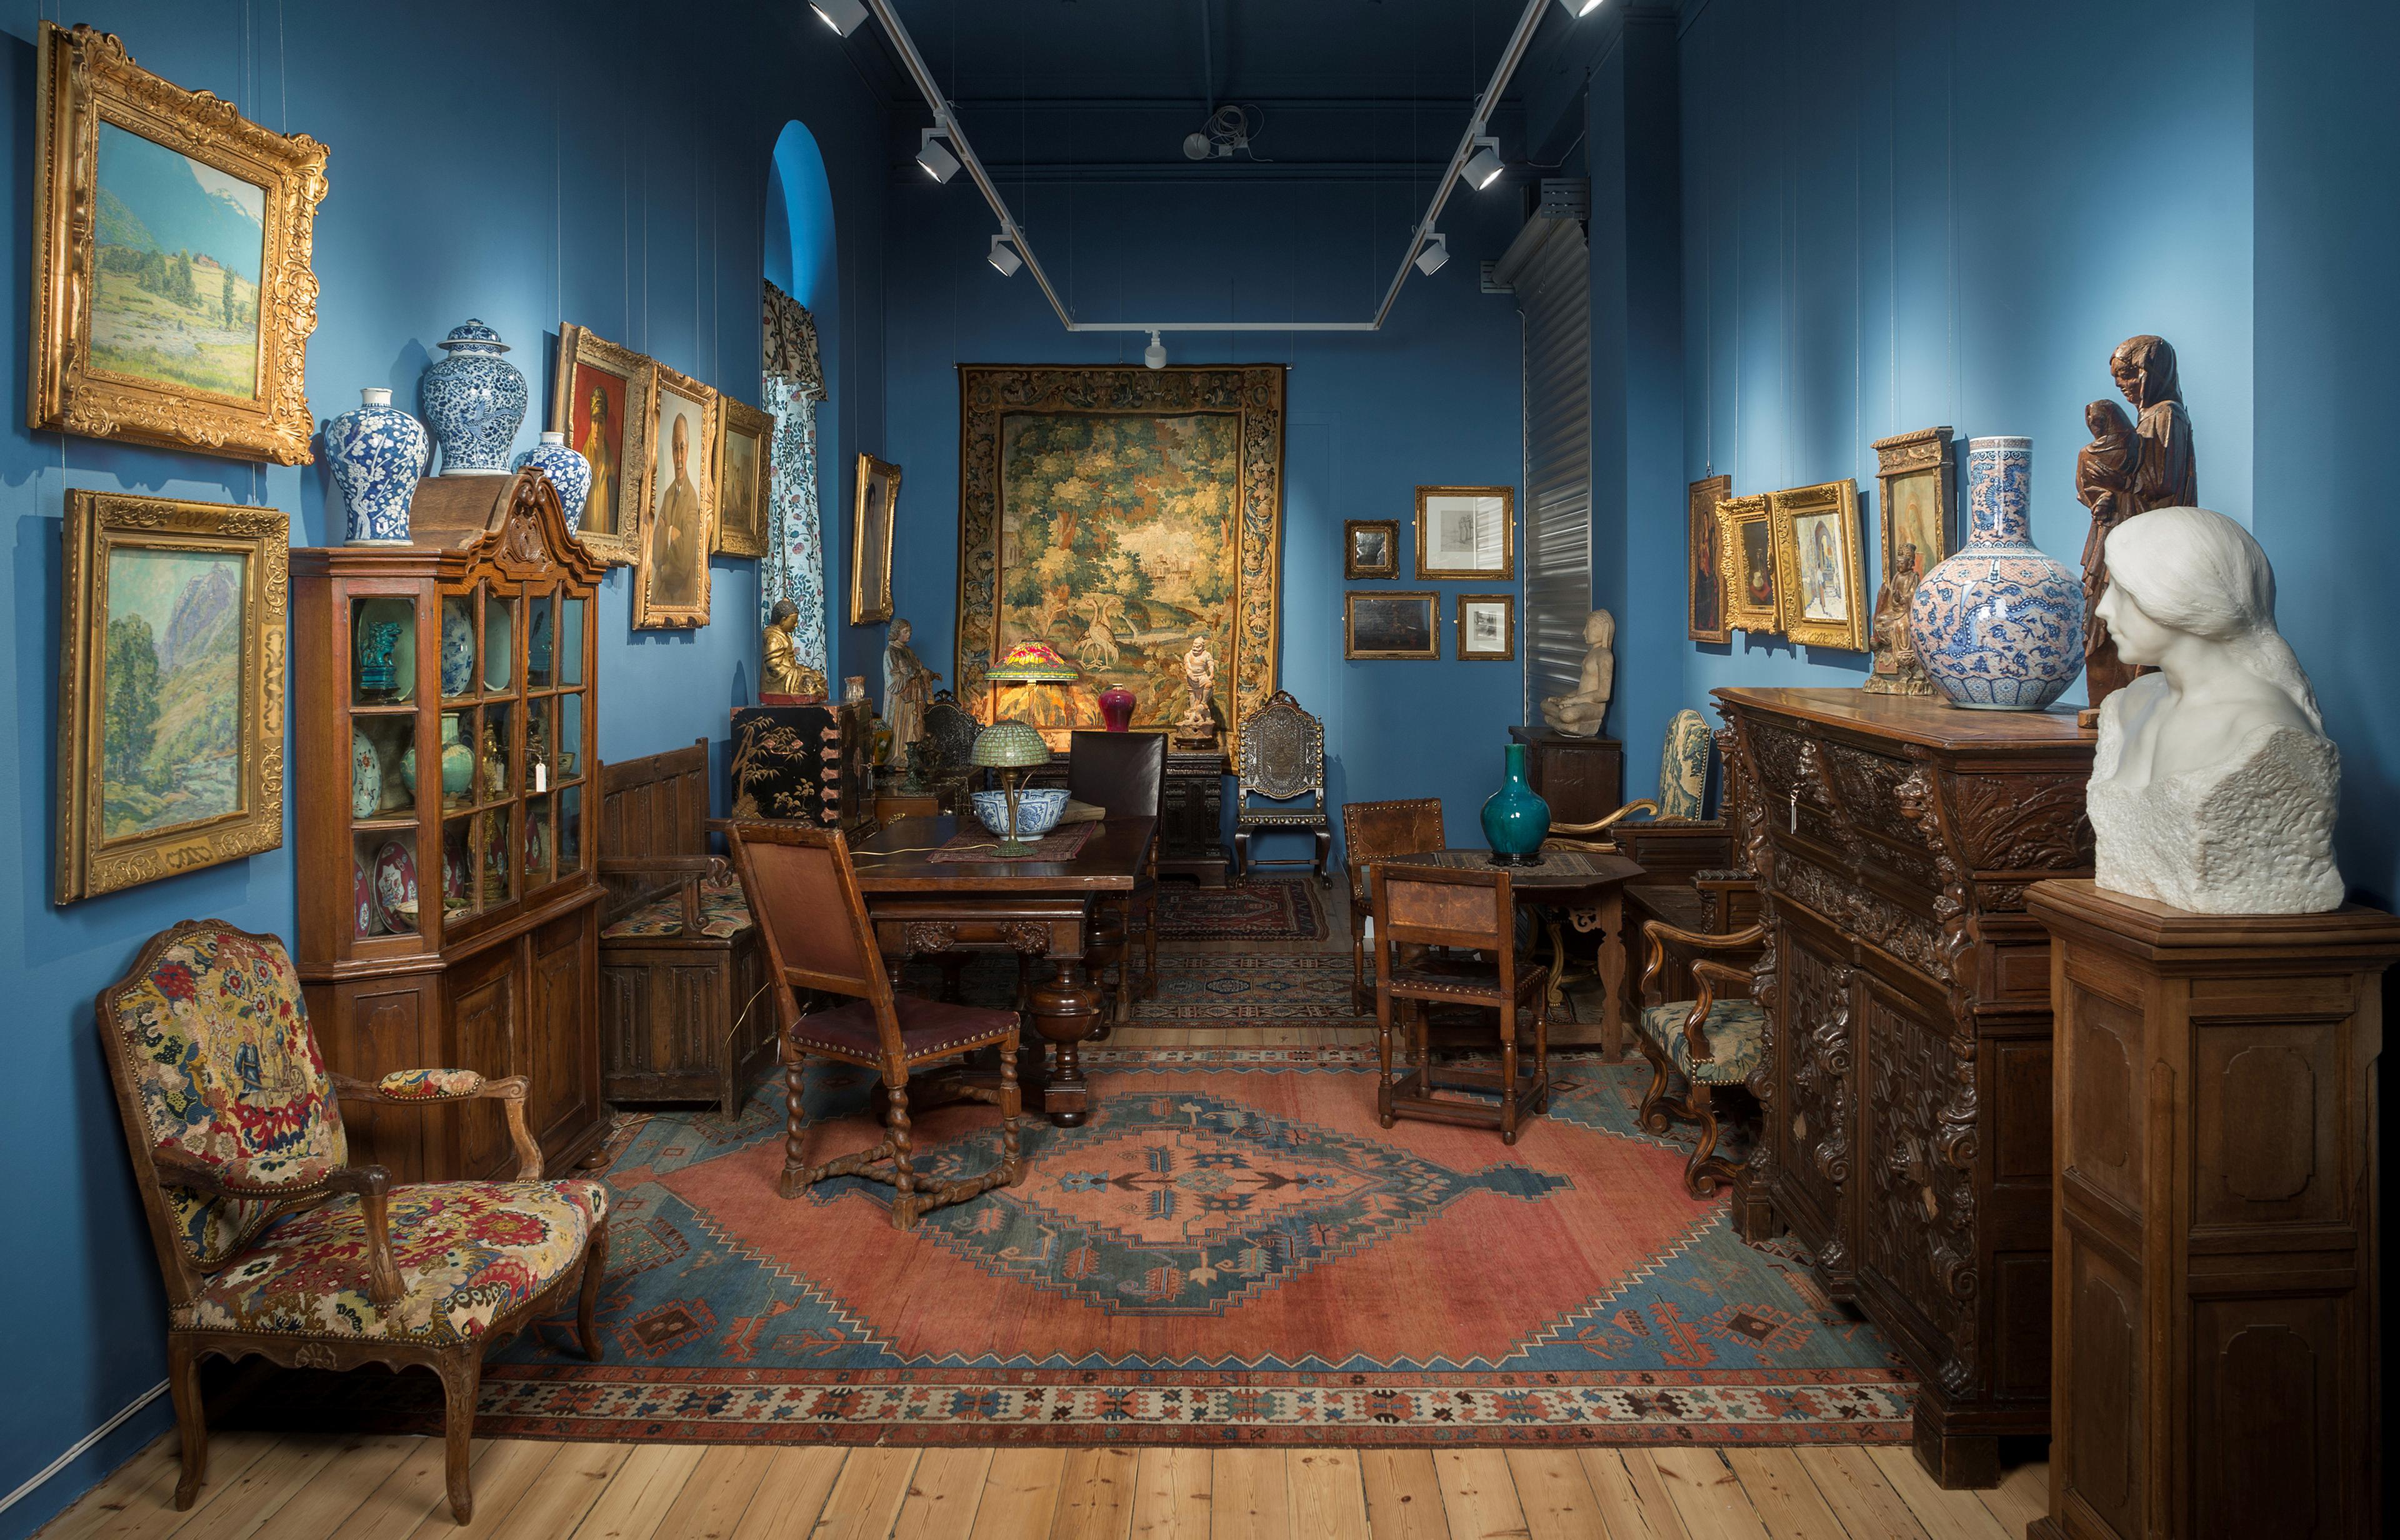 Et utstillingsrom i Permanenten, som presenterer Singersamlingen, med en rekke gjenstander og møbler.